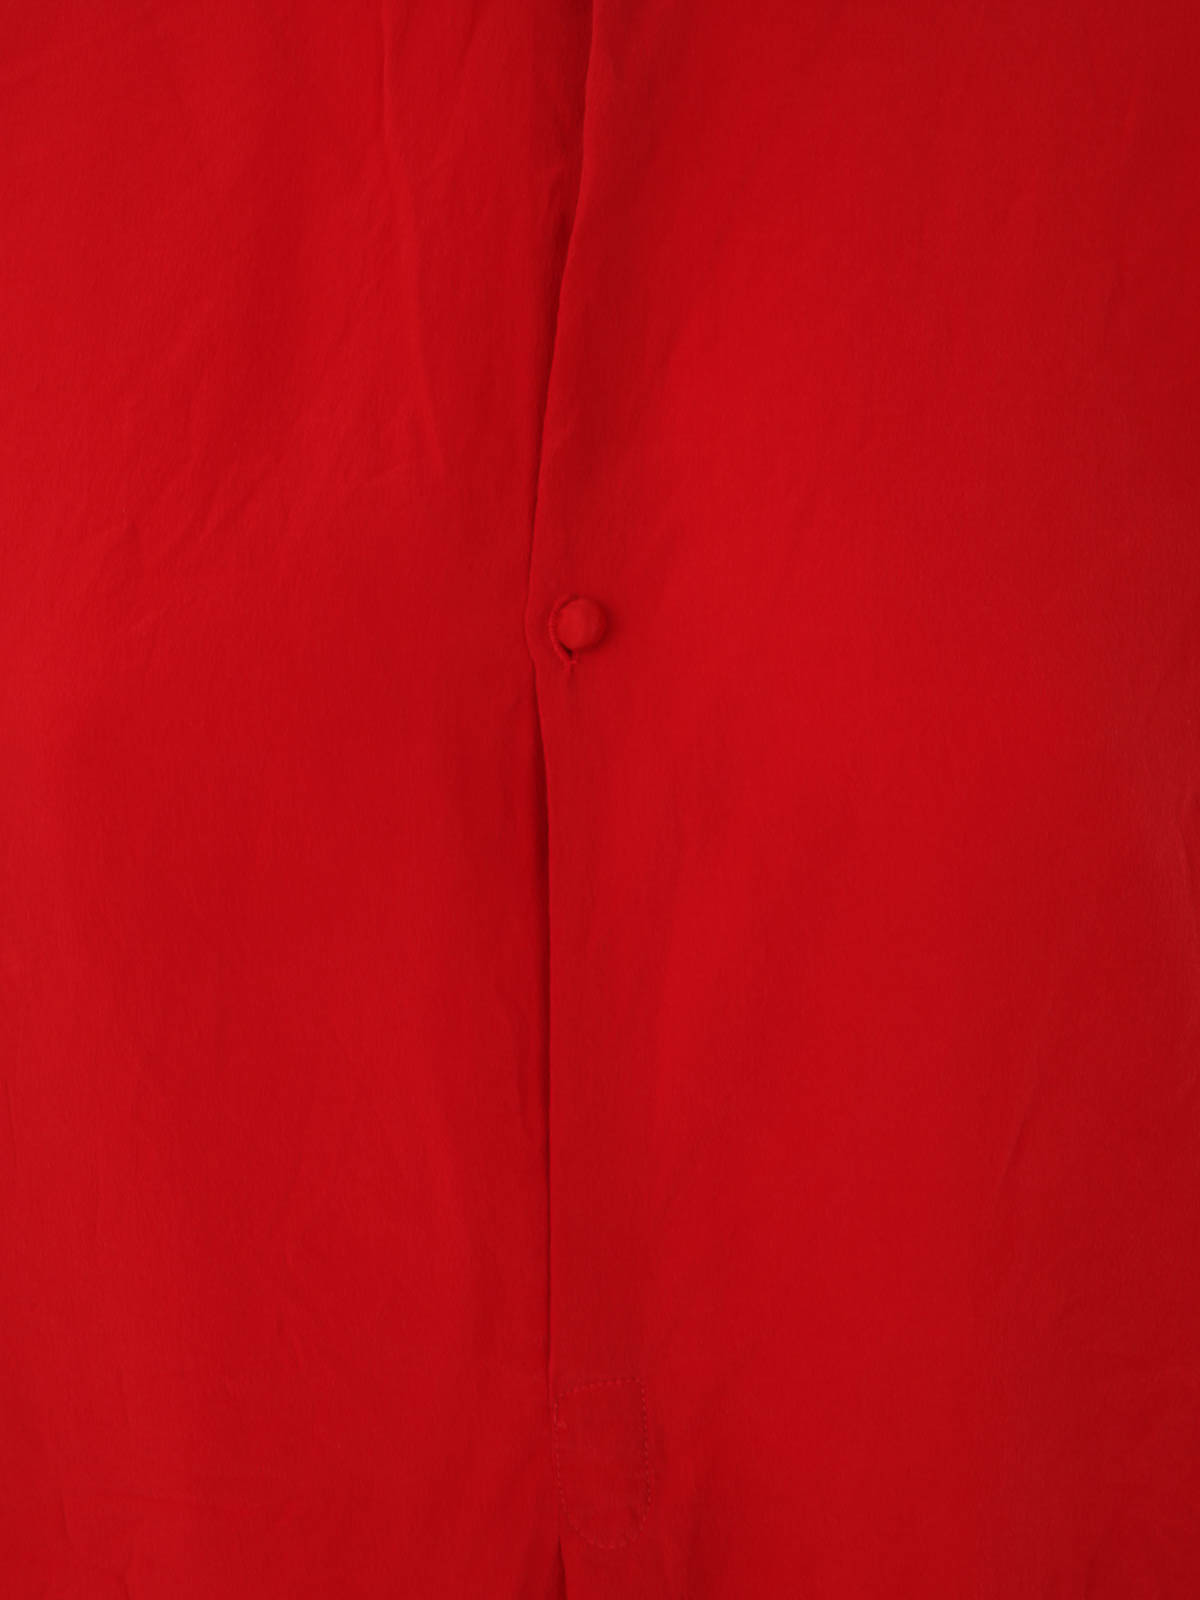 Daniela Gregis draped button-up silk shirt - 12 ROSSO/RED